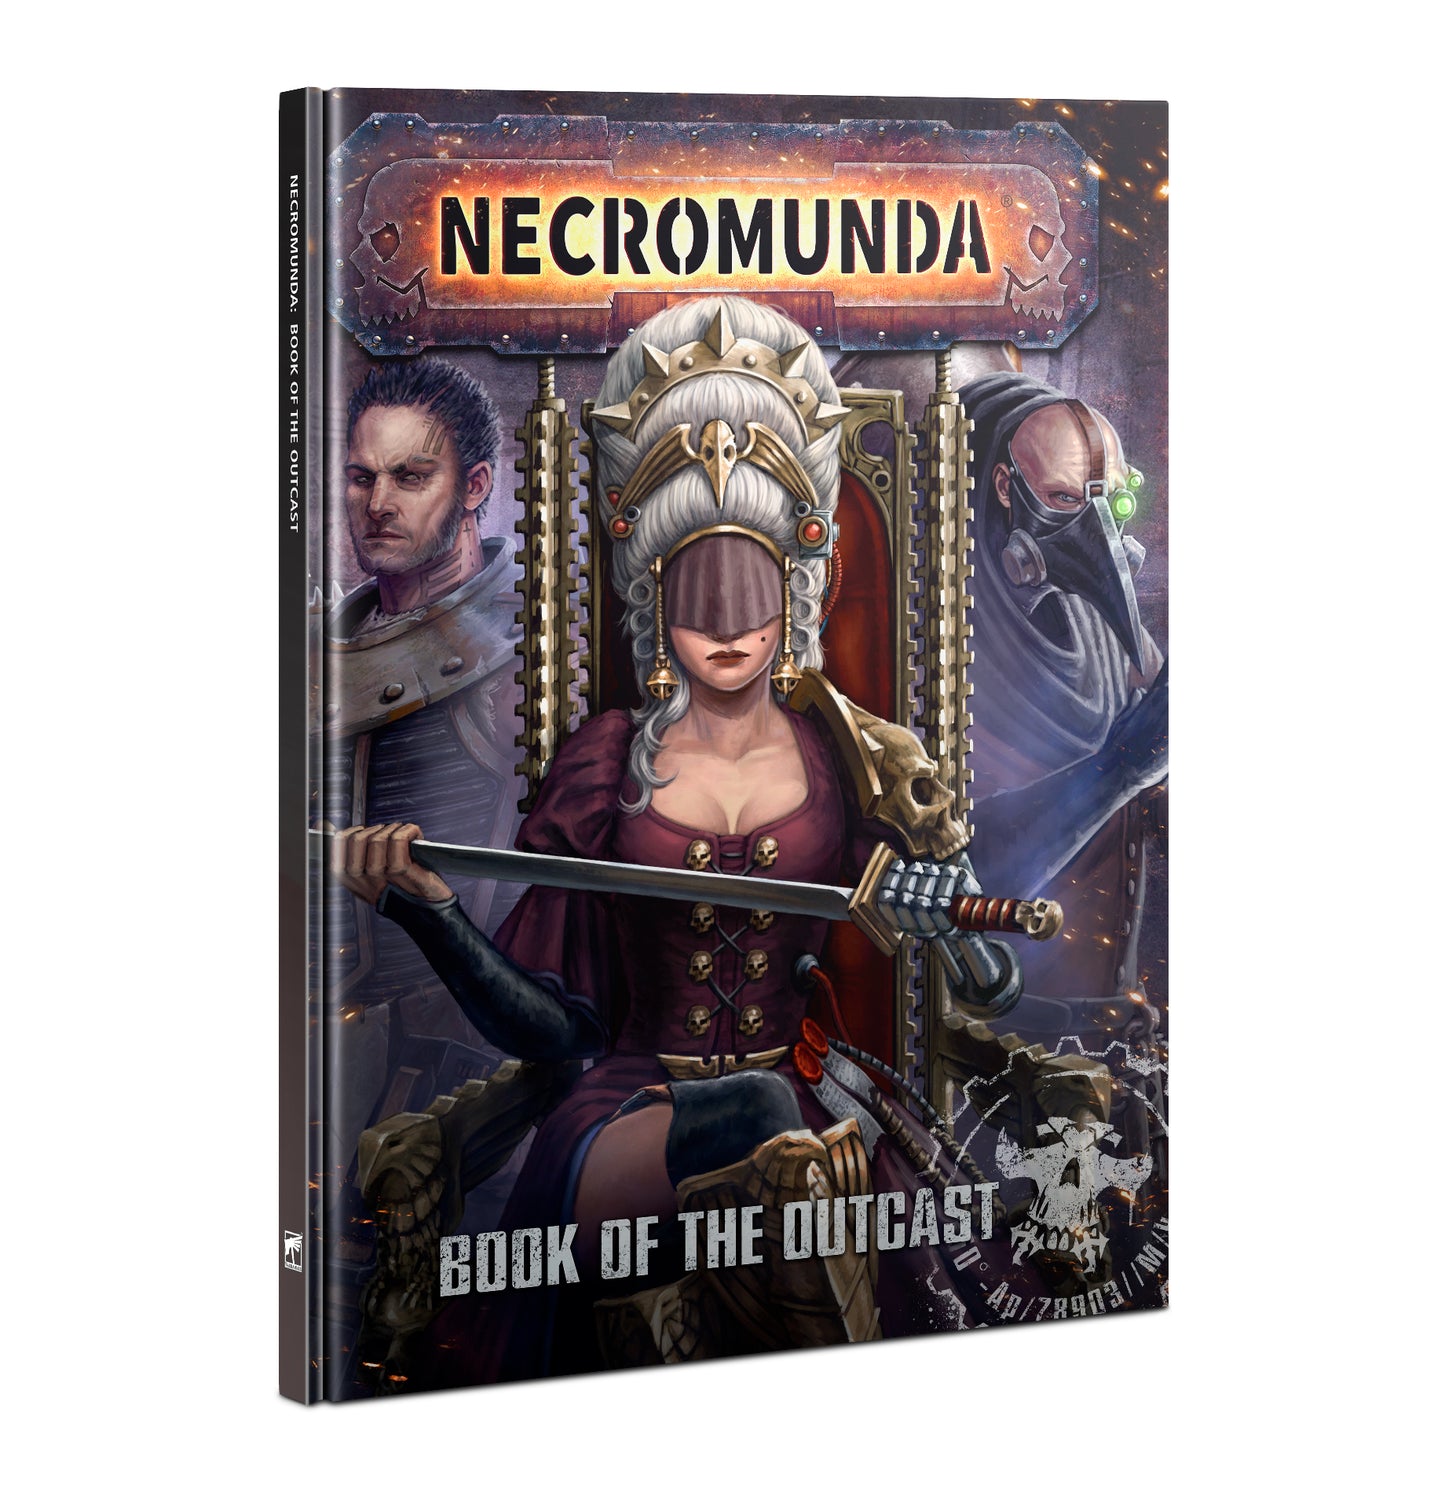 Necromunda Book of Outcasts